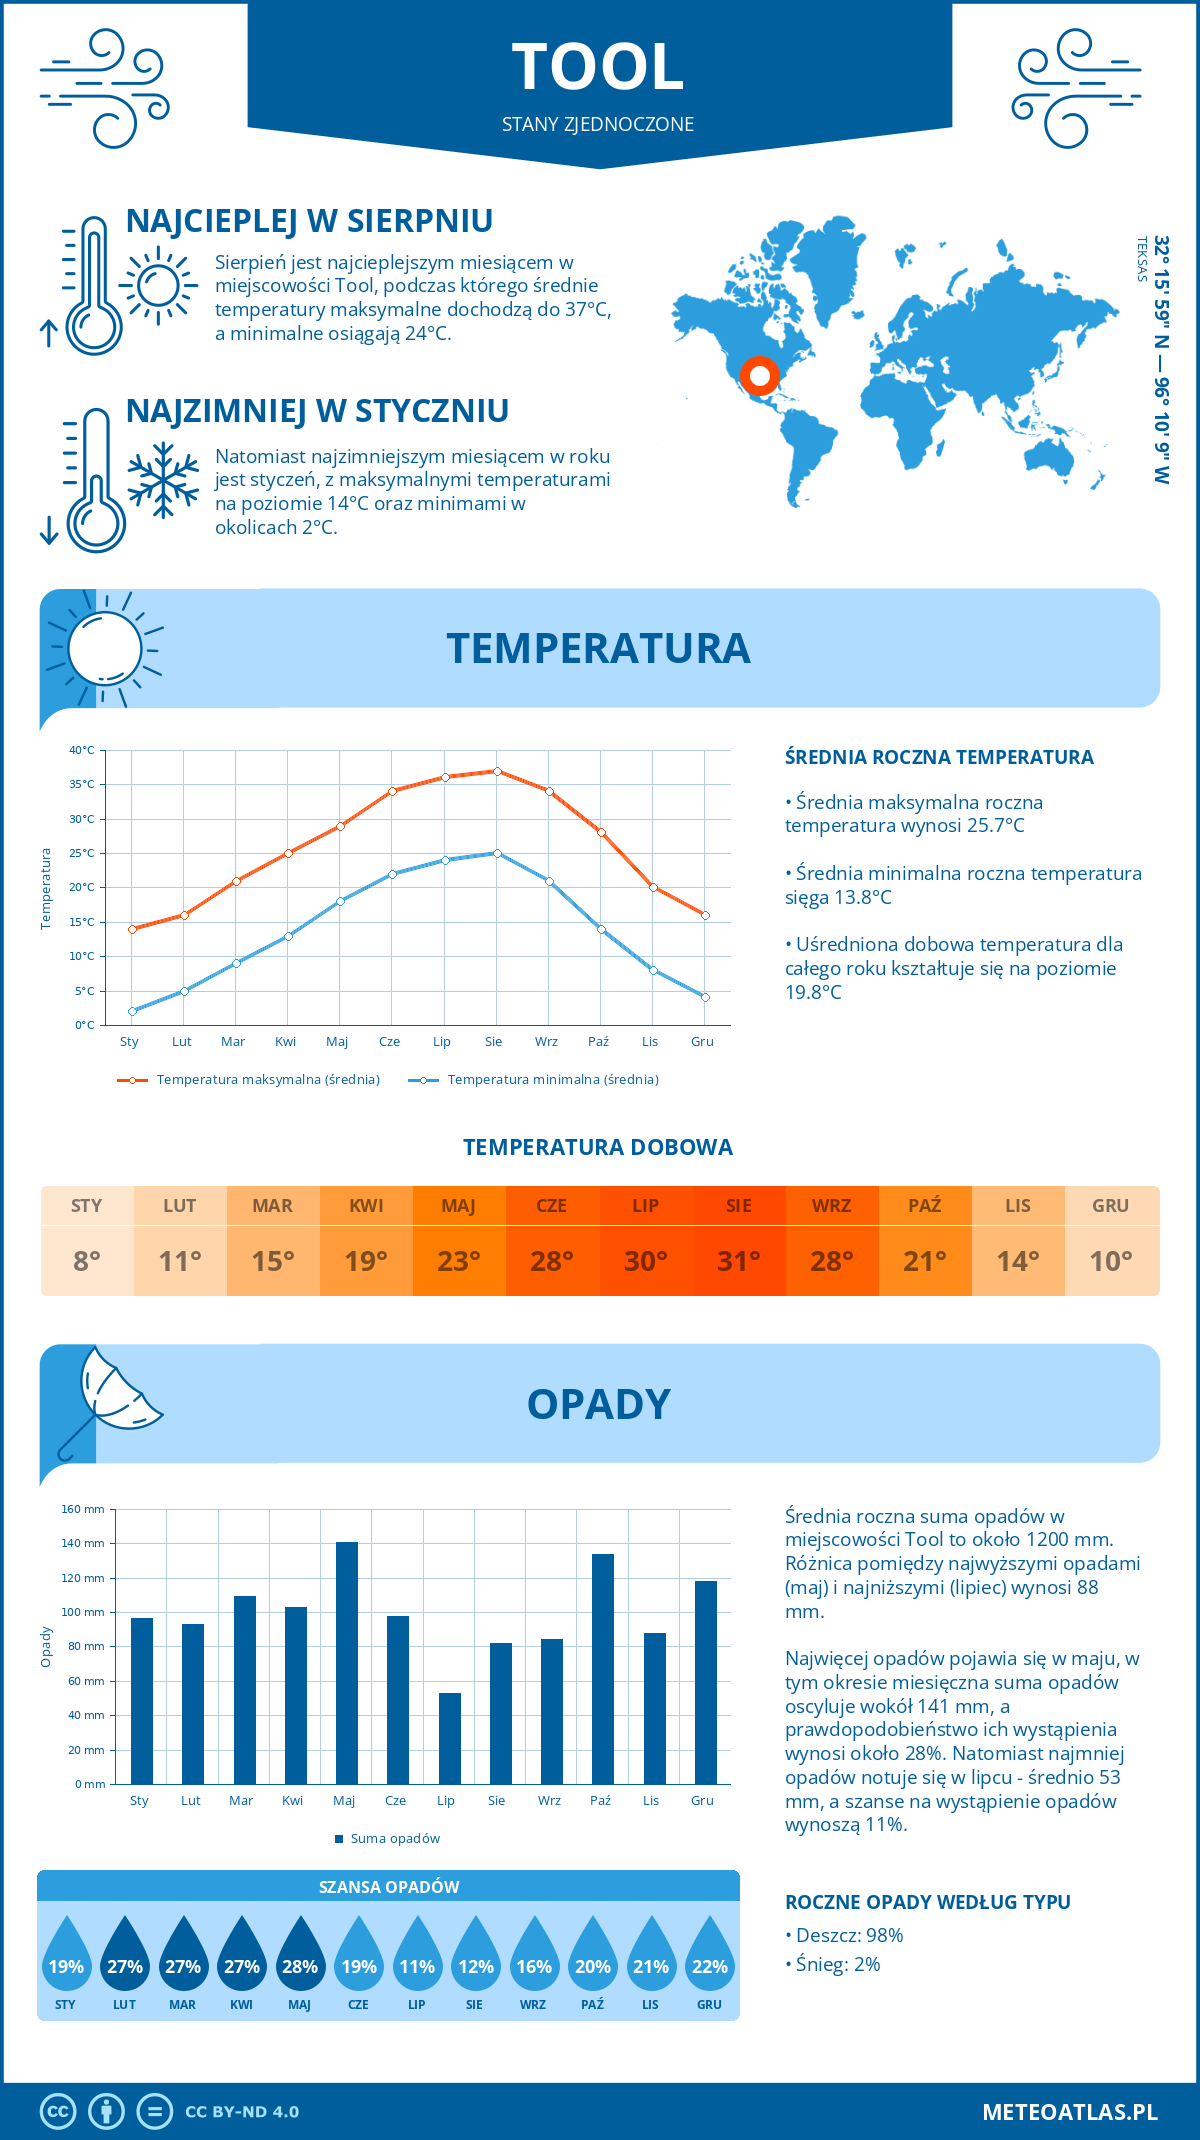 Pogoda Tool (Stany Zjednoczone). Temperatura oraz opady.